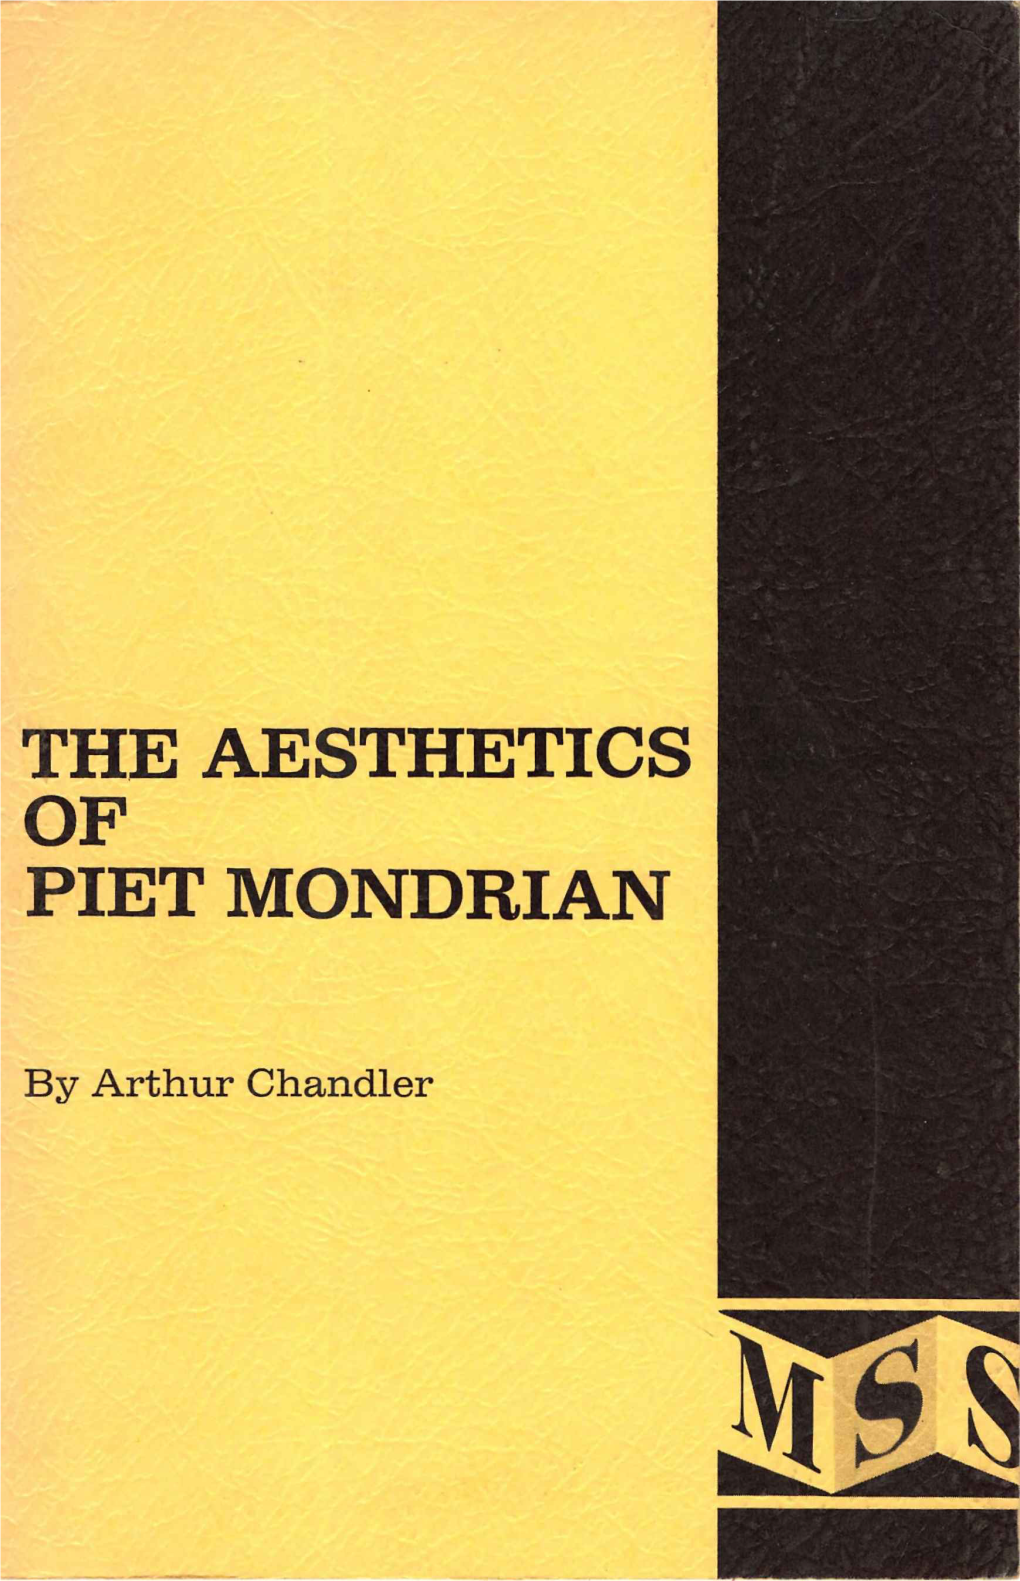 The Aesthetics of Piet Mondrian